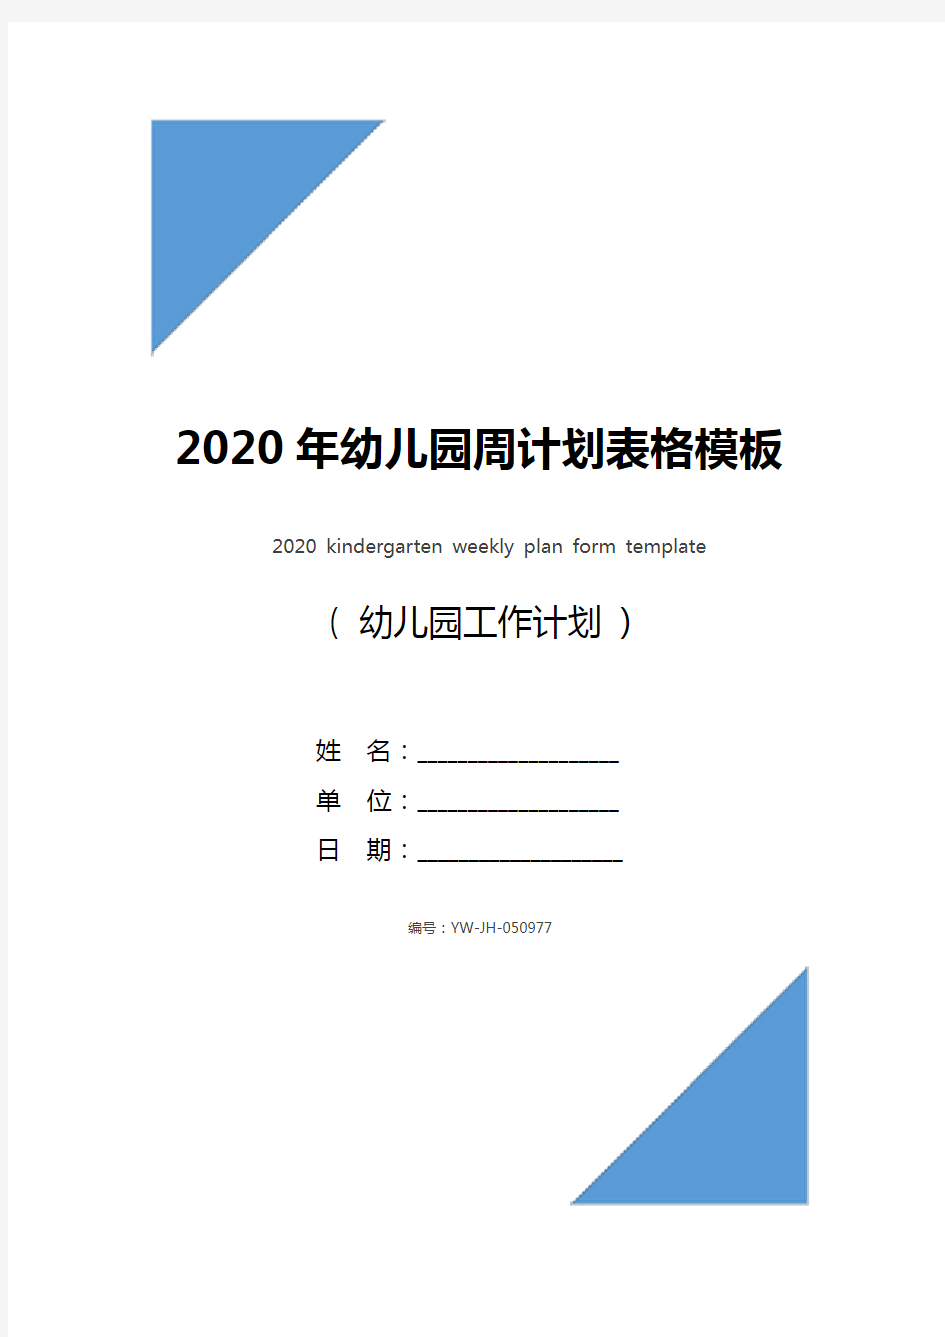 2020年幼儿园周计划表格模板